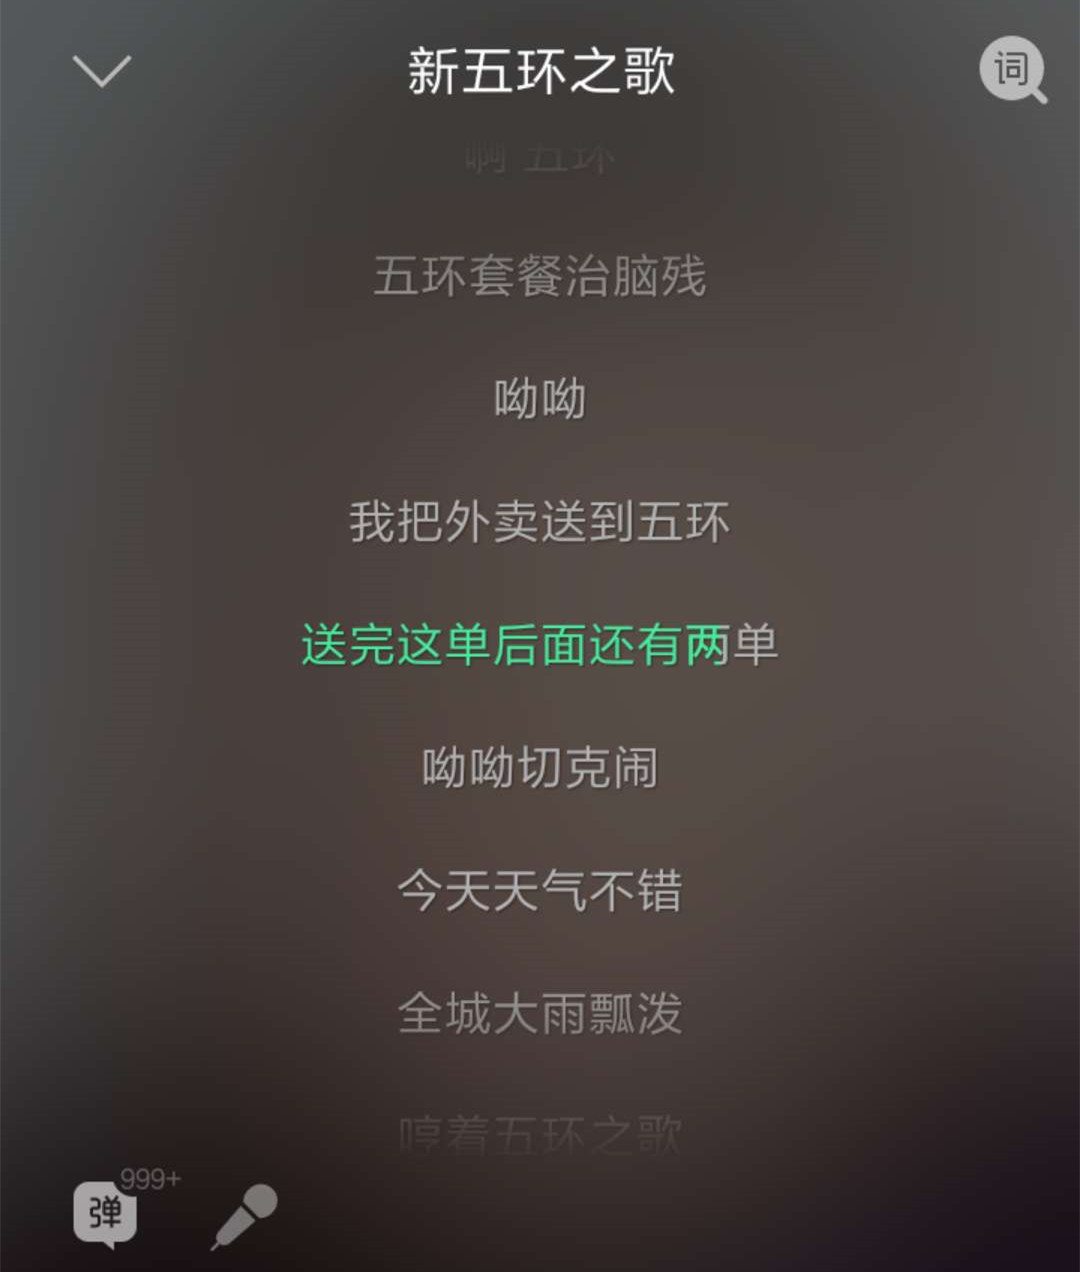 《新五环之歌》歌词改编者岳云鹏,广告制作者以及美团运营商诉至